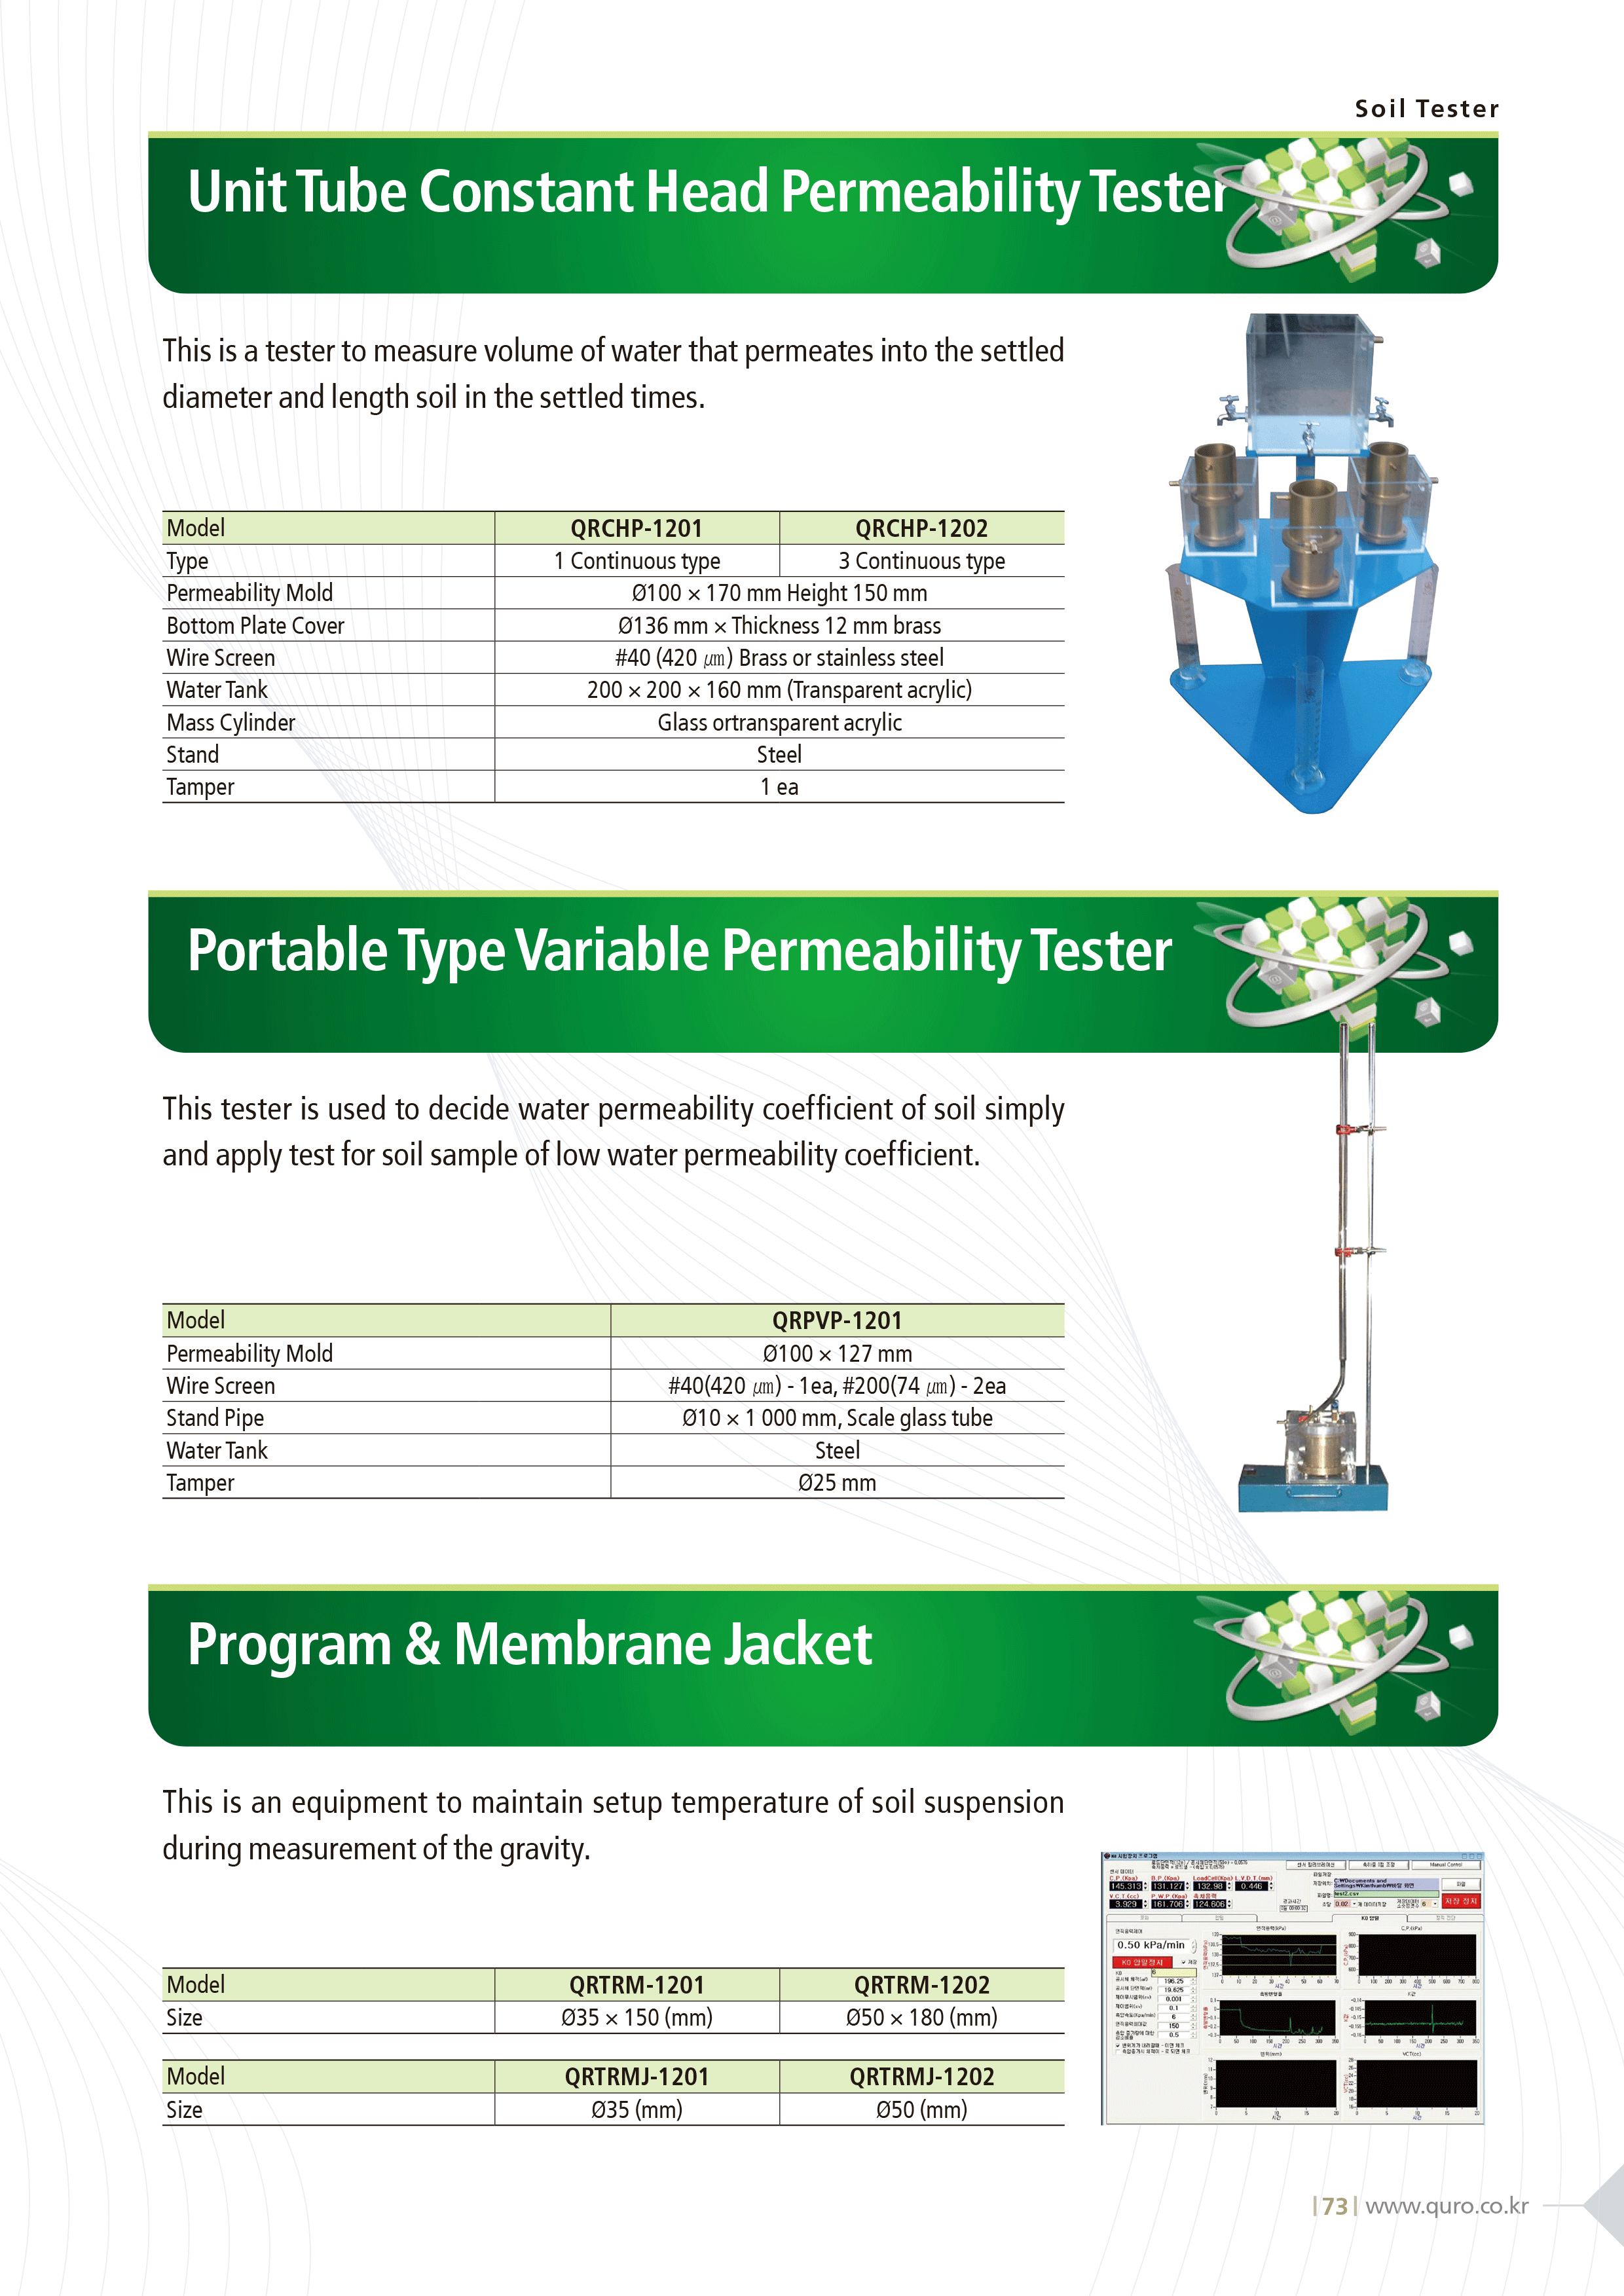 Program_Membrane_Jacket.gif